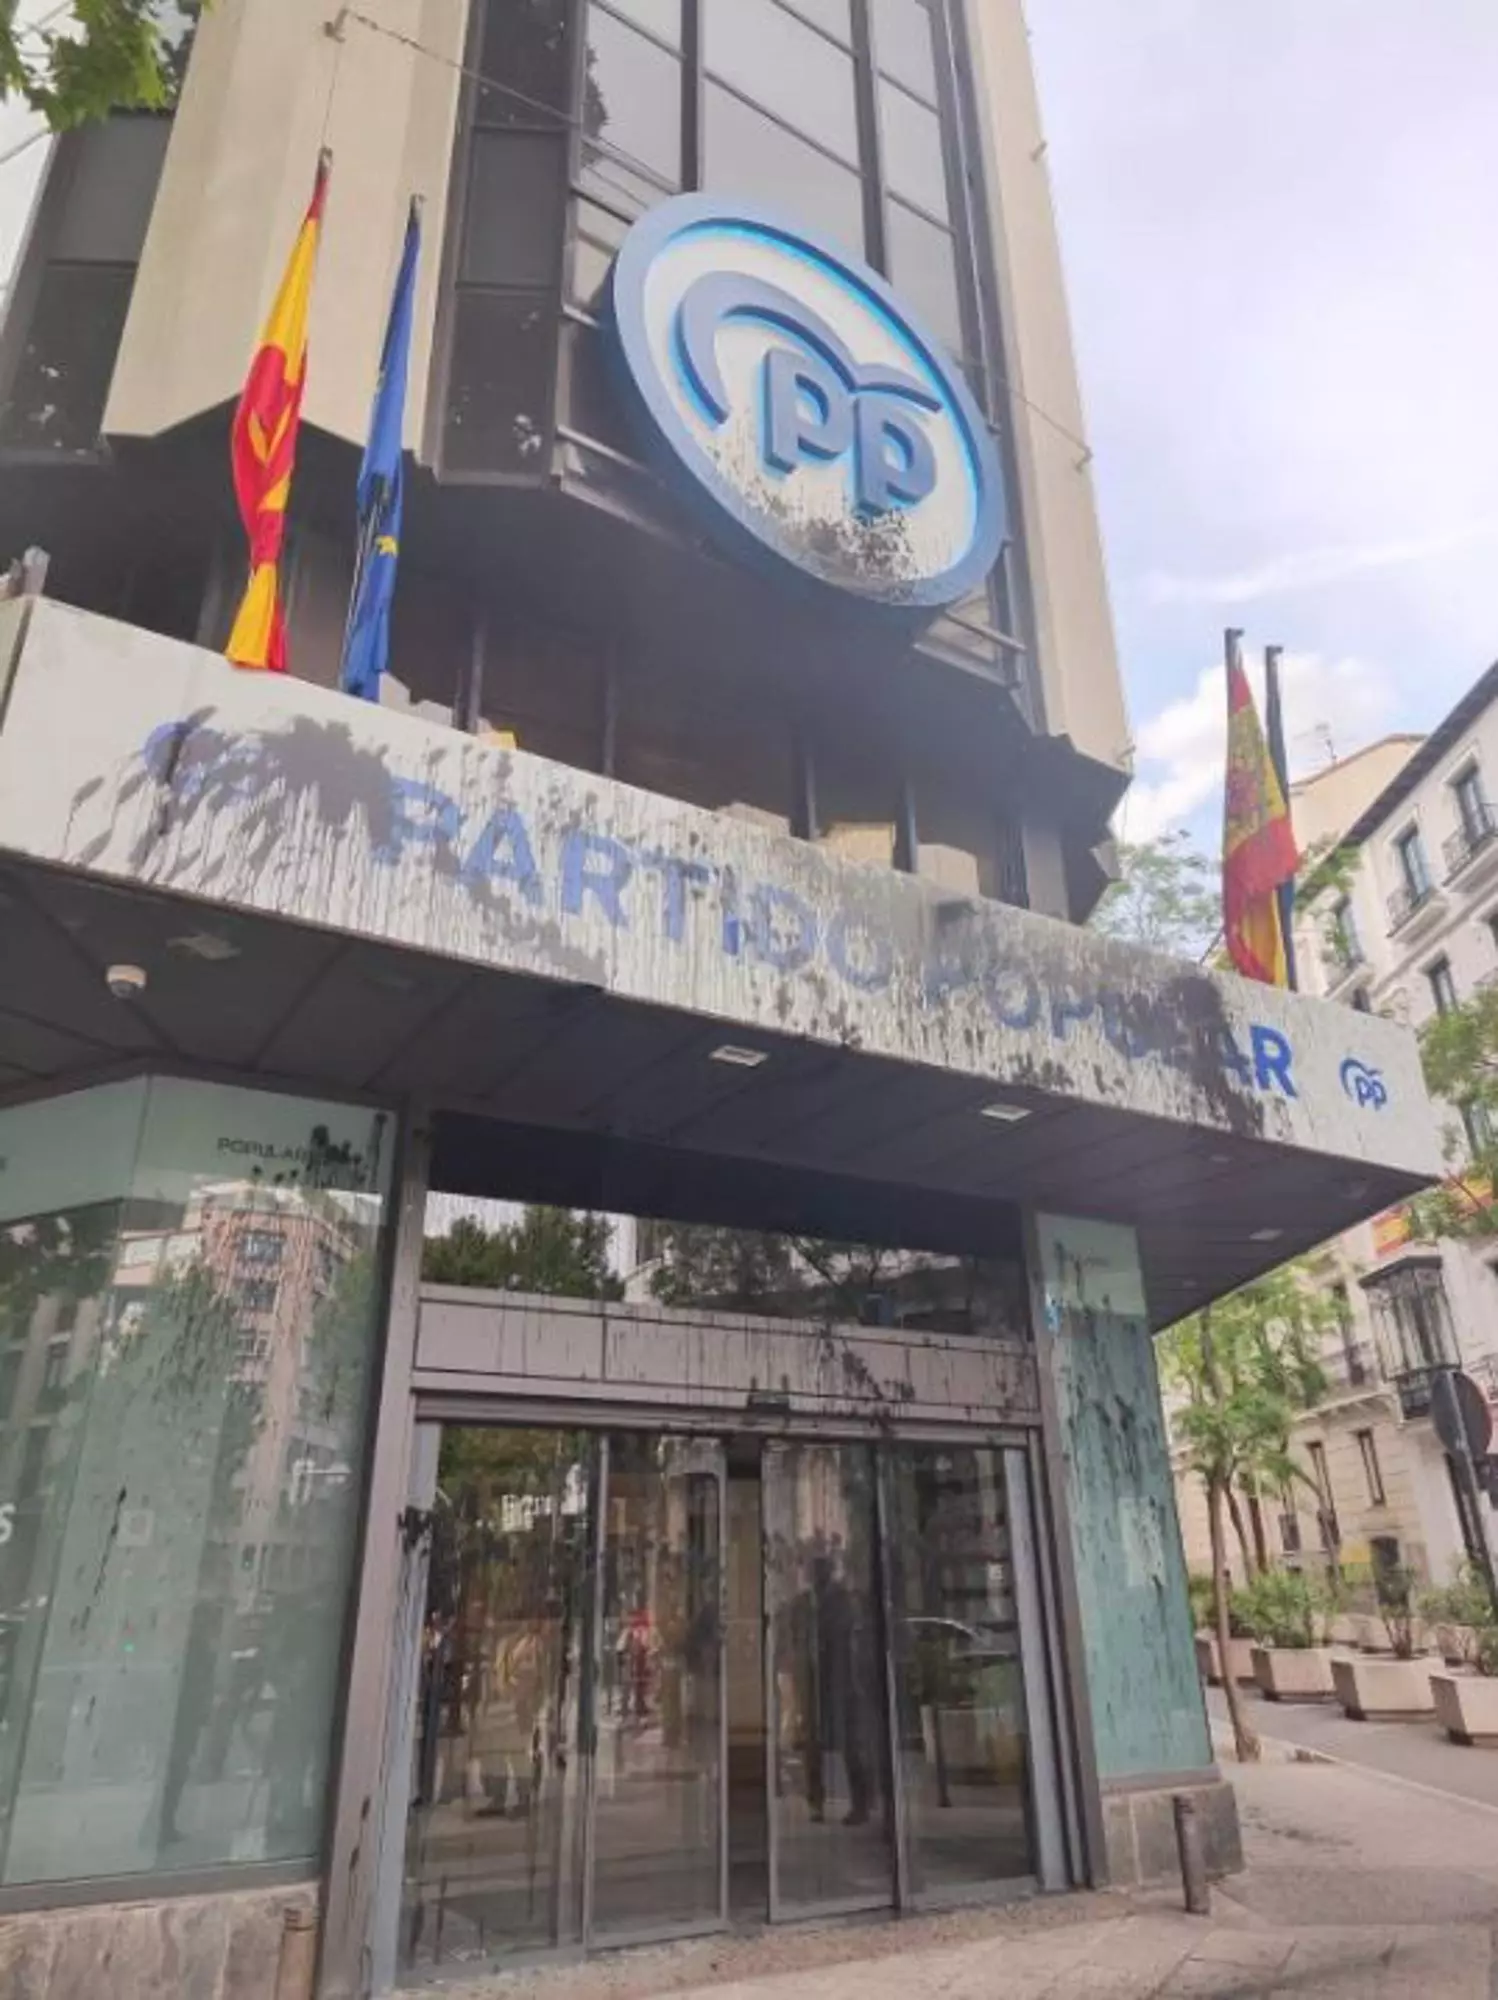 Cinco detenidos por lanzar pintura contra la fachada de las sedes centrales del PP y del PSOE en Madrid